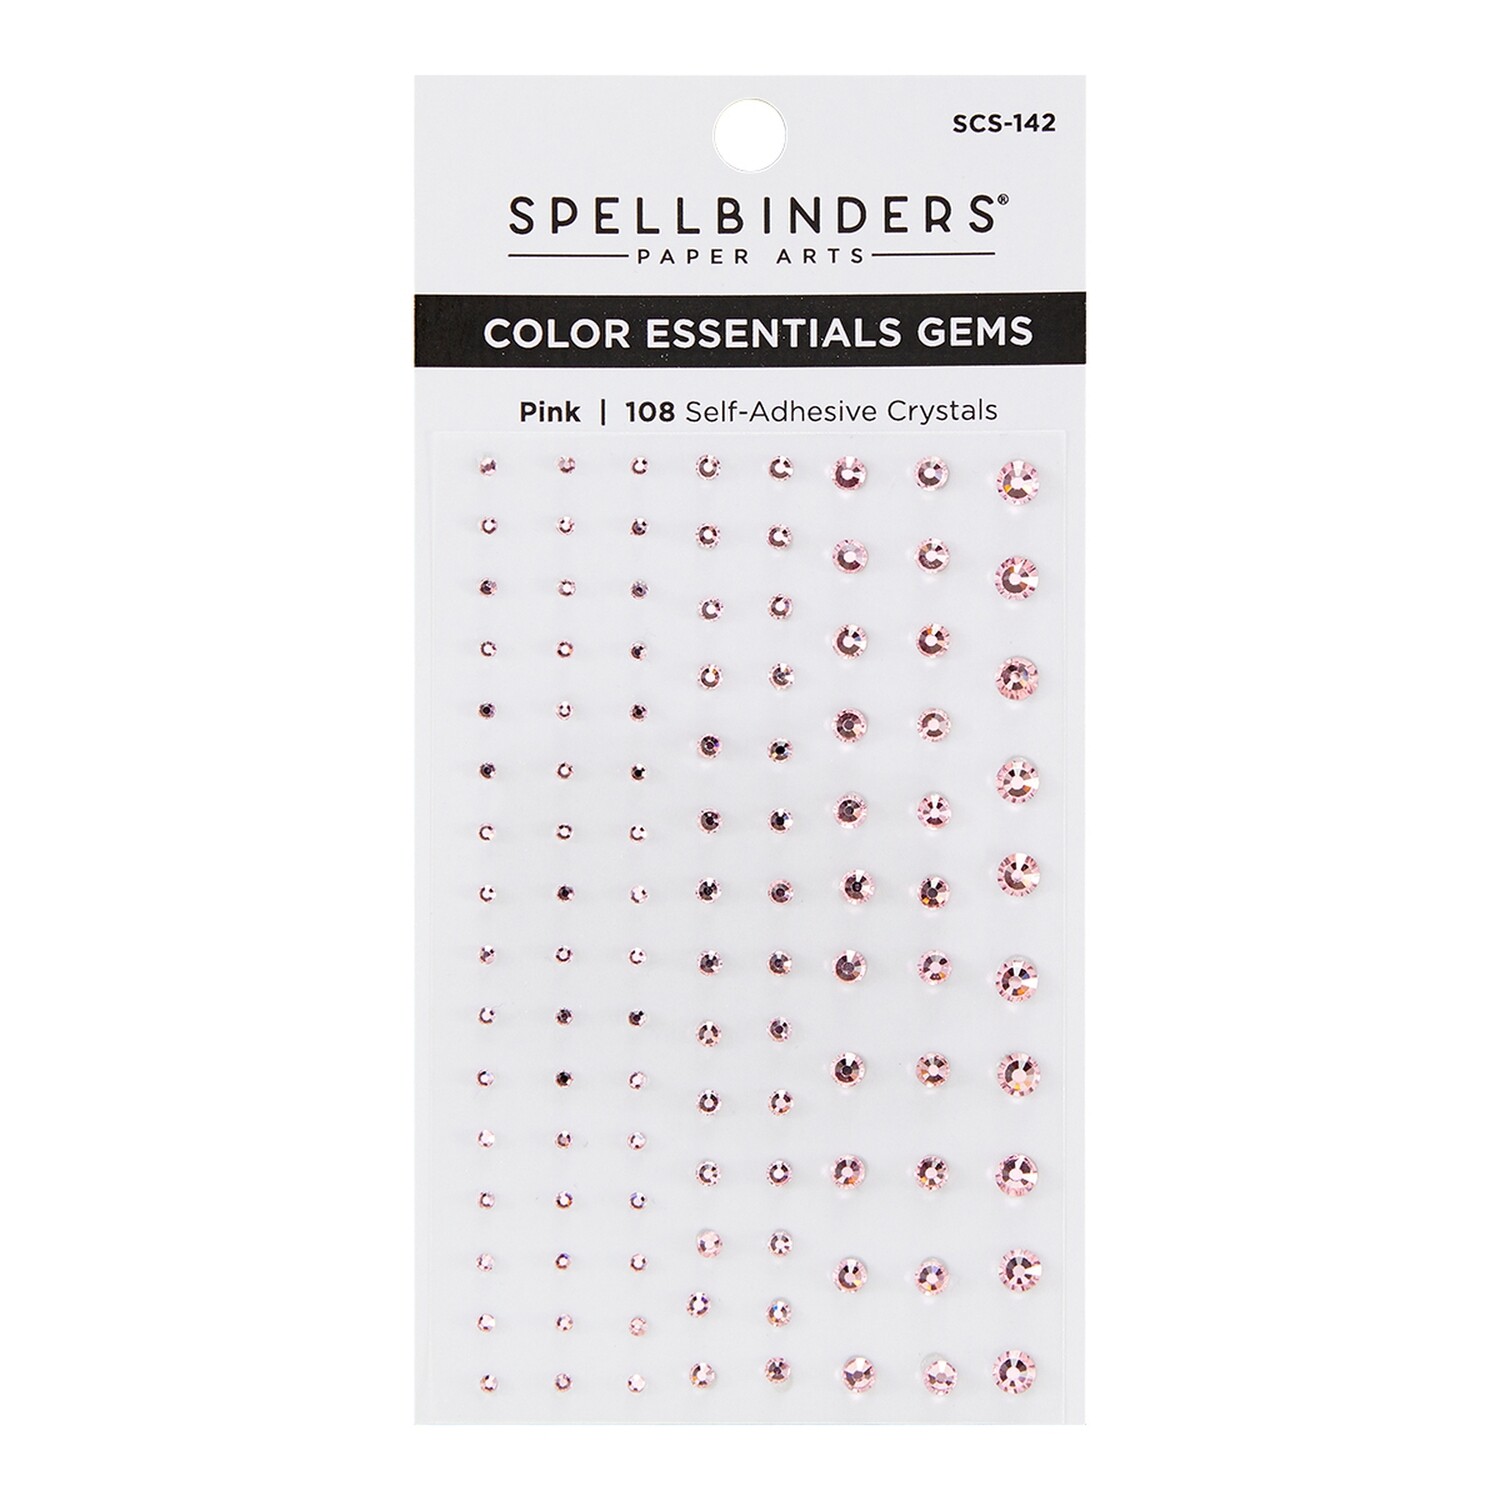 Spellbinders Color Essentials Gems - Pink - 108 Self- Adhesive Crystals